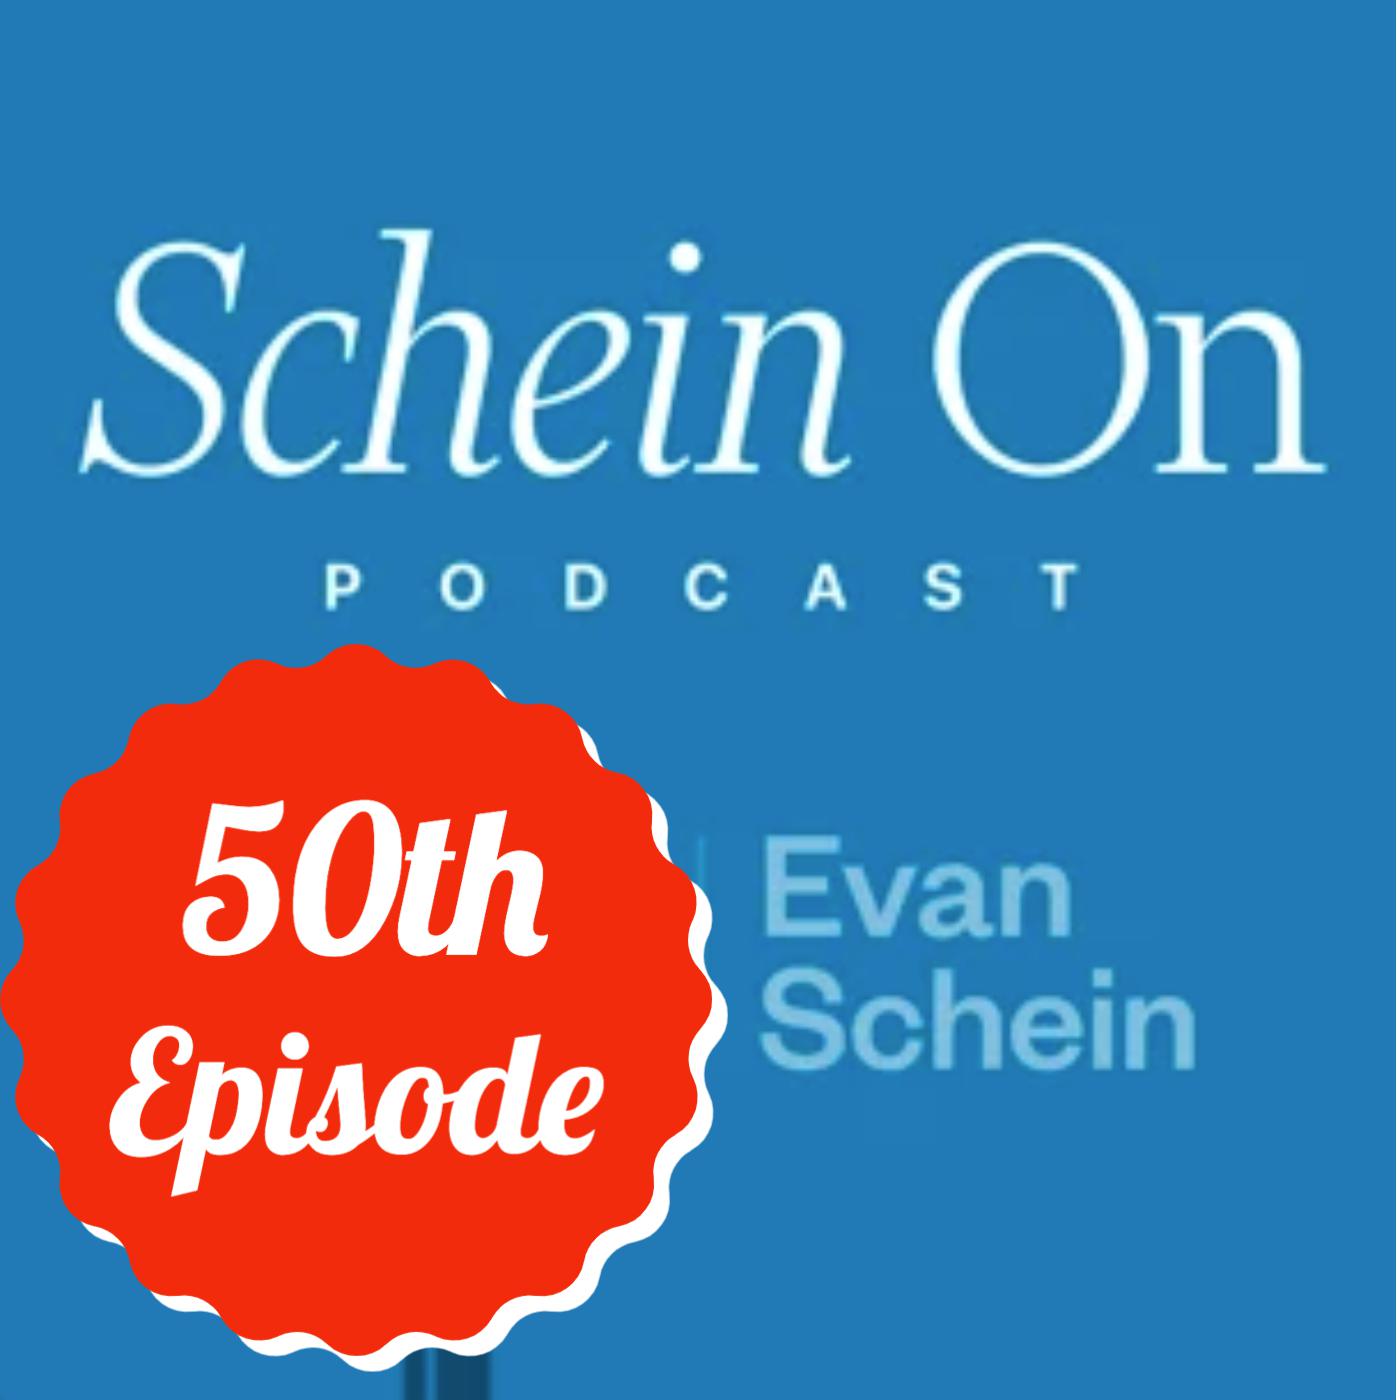 Schein On's 50th Episode